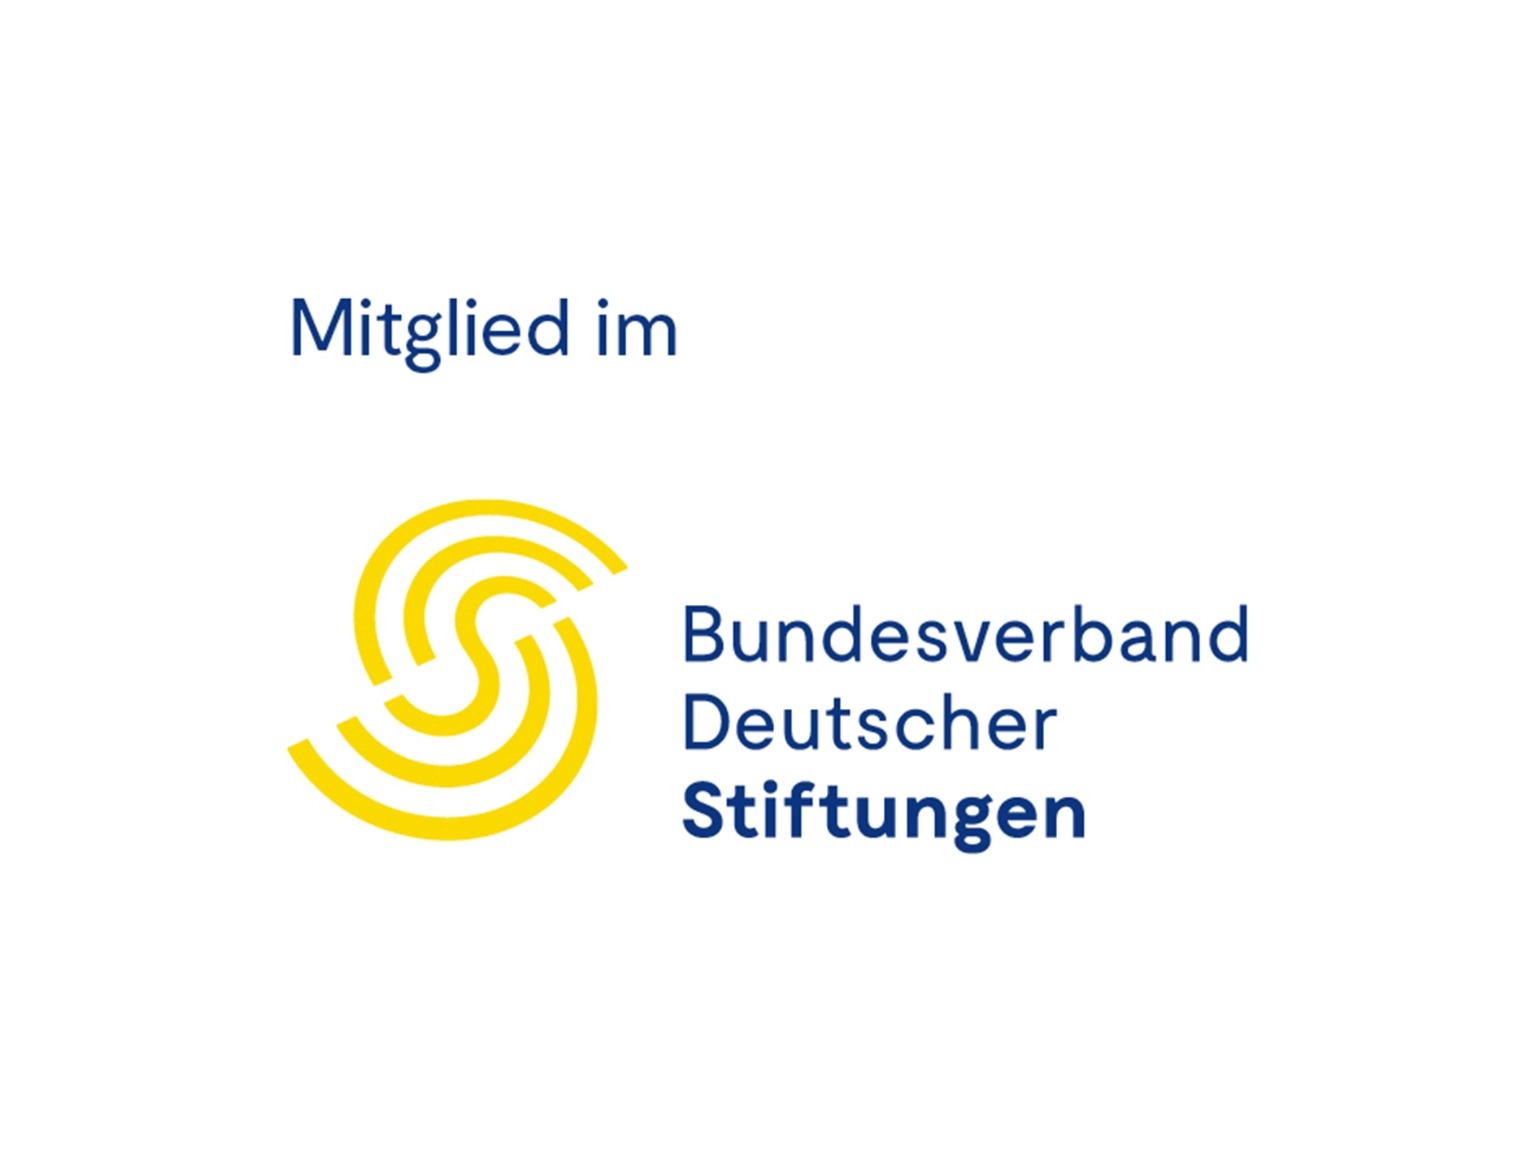 Logo Bundesverband Deutscher Stiftungen mit dem Zusatz Mitglied im